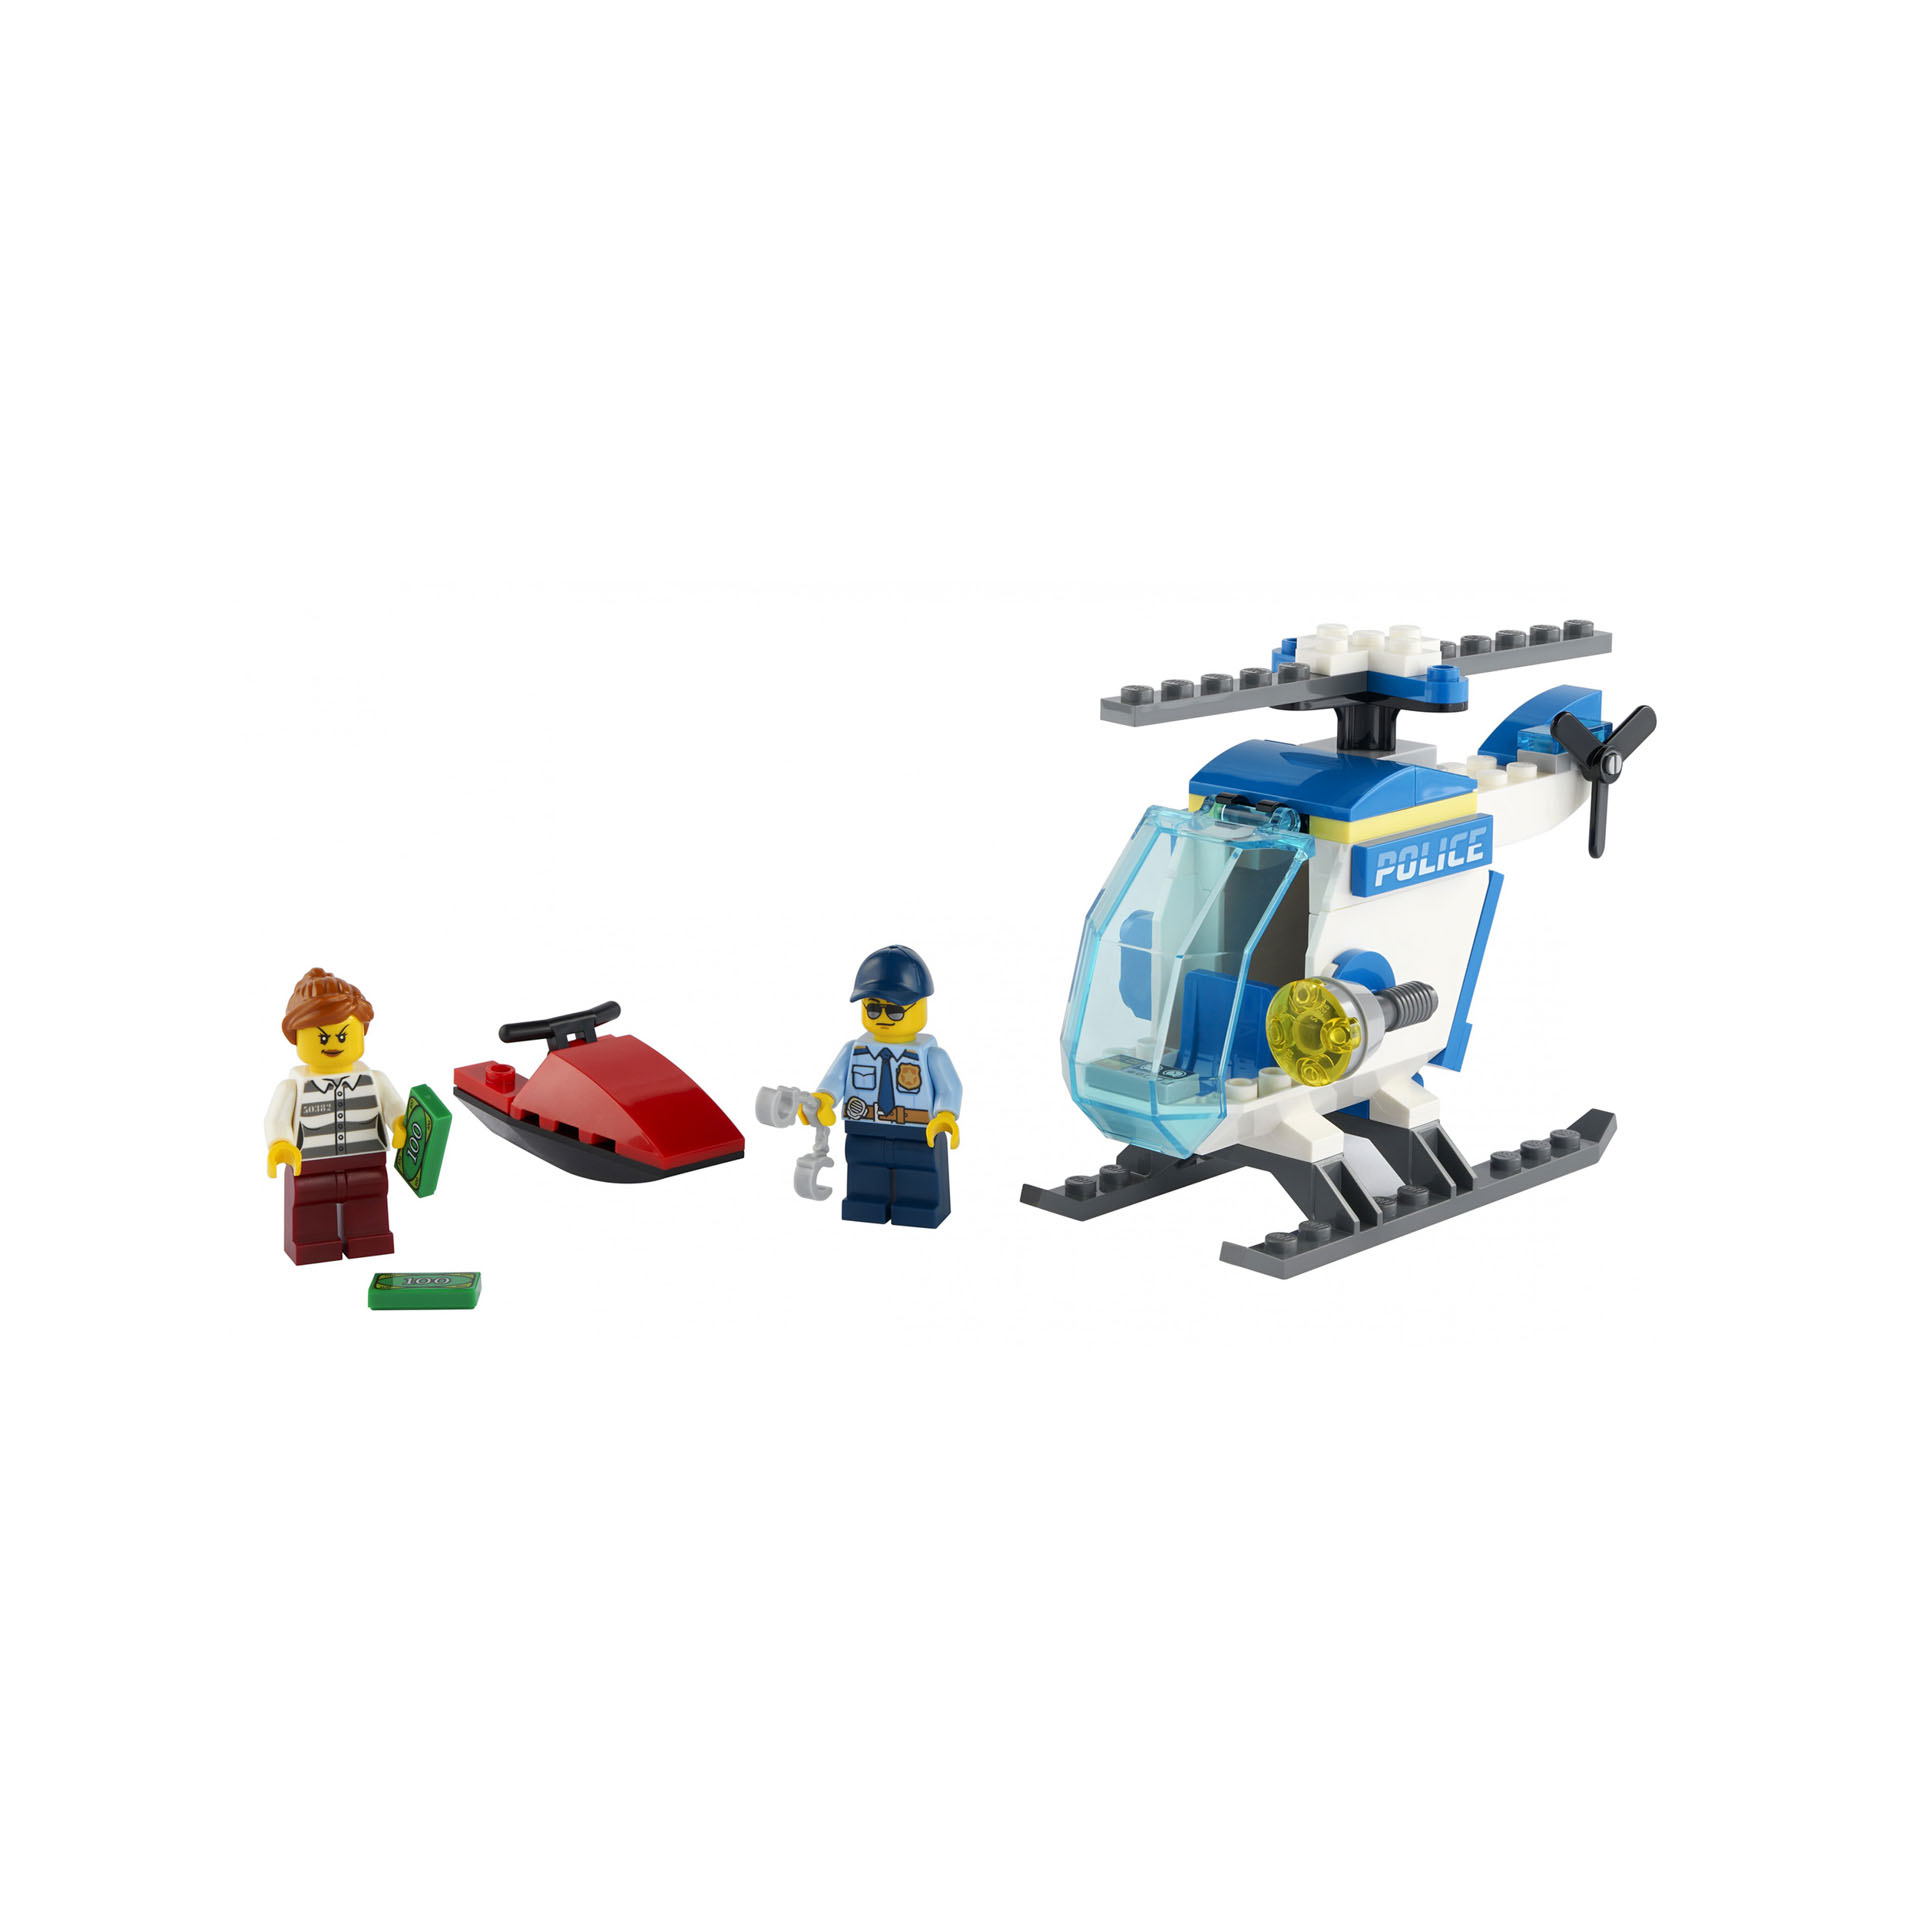 LEGO City Elicottero della Polizia con Minifigure Agente di Polizia e Ladro, per 60275, , large